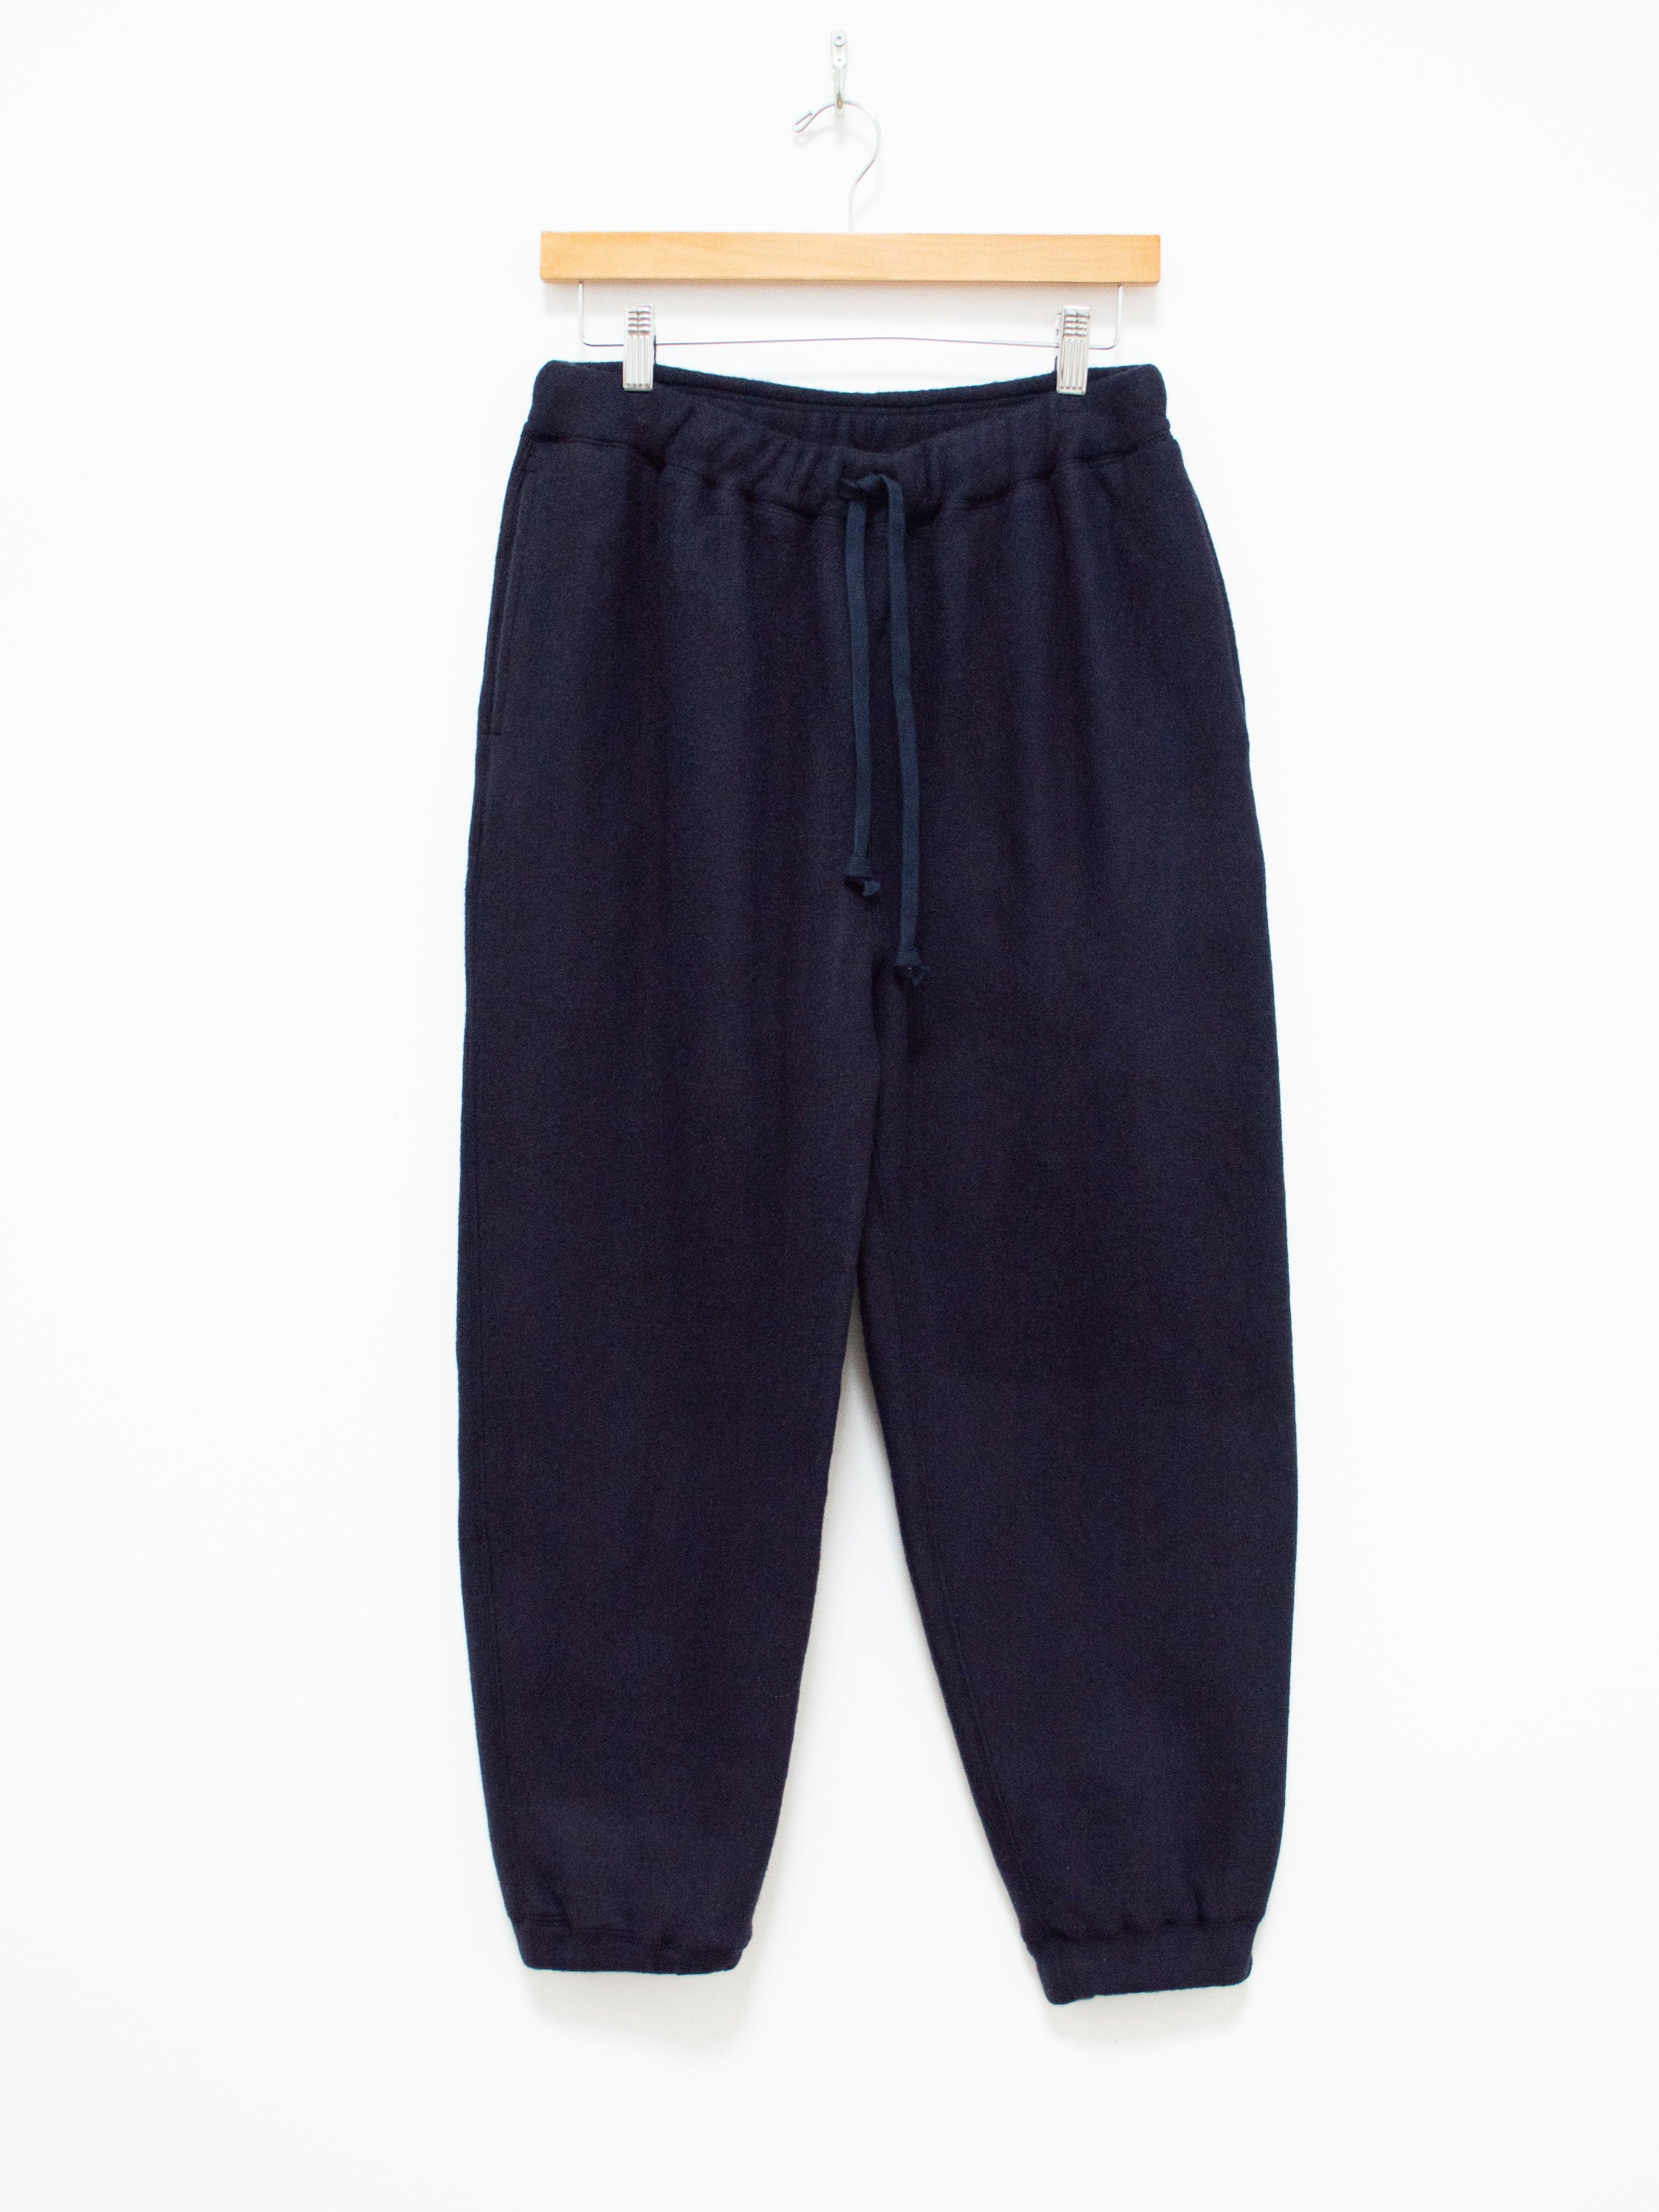 Namu Shop - ts(s) Wool Navy Cuffed Sweatpants - Jersey